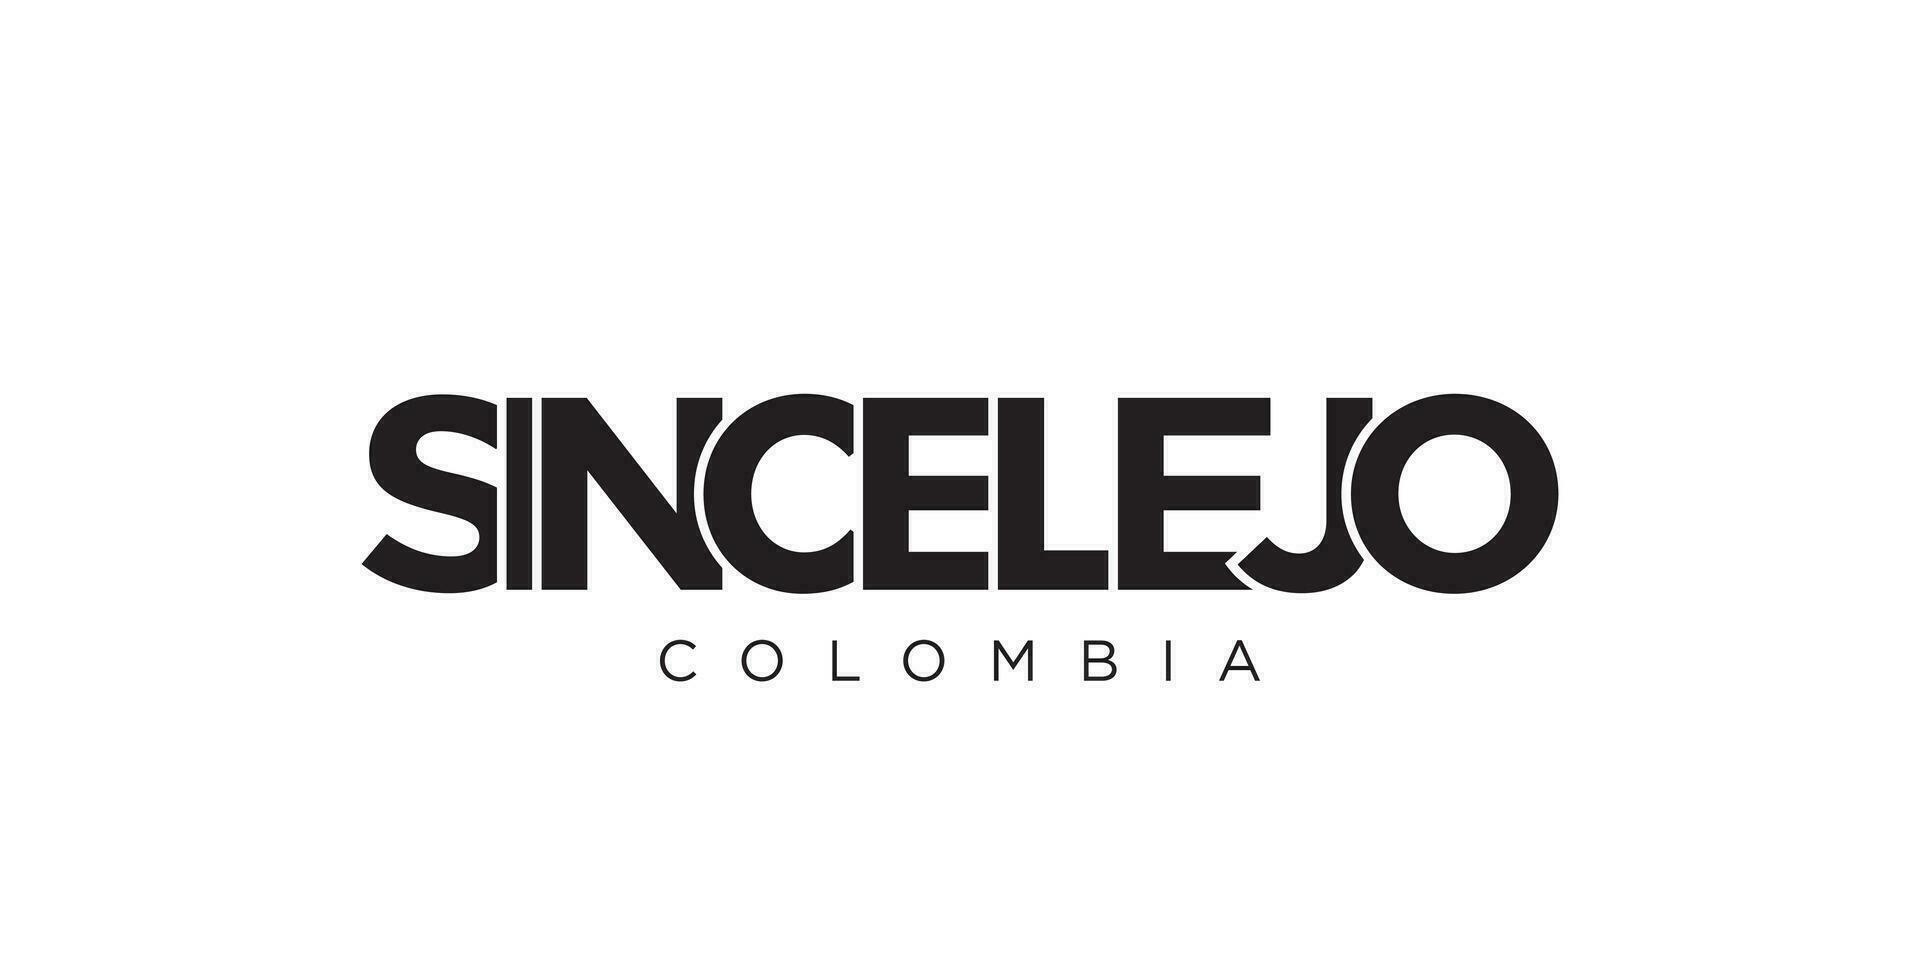 sincelejo i de colombia emblem. de design funktioner en geometrisk stil, vektor illustration med djärv typografi i en modern font. de grafisk slogan text.